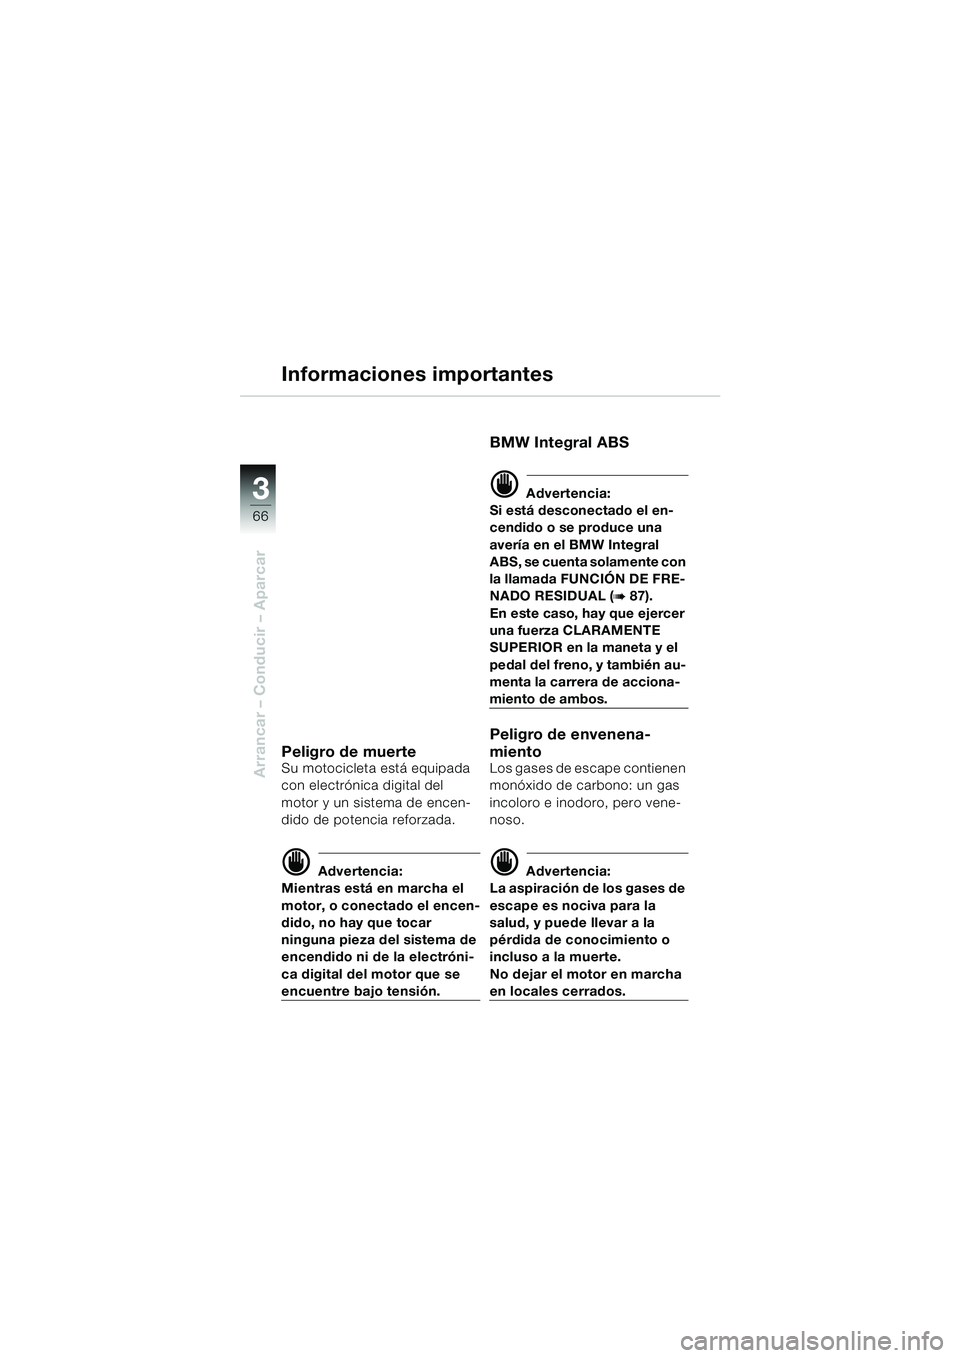 BMW MOTORRAD K 1200 LT 2005  Manual de instrucciones (in Spanish) 66
Arrancar – Conducir – Aparcar
3
Informaciones importantes
Peligro de muerteSu motocicleta está equipada 
con electrónica digital del 
motor y un sistema de encen-
dido de potencia reforzada.
